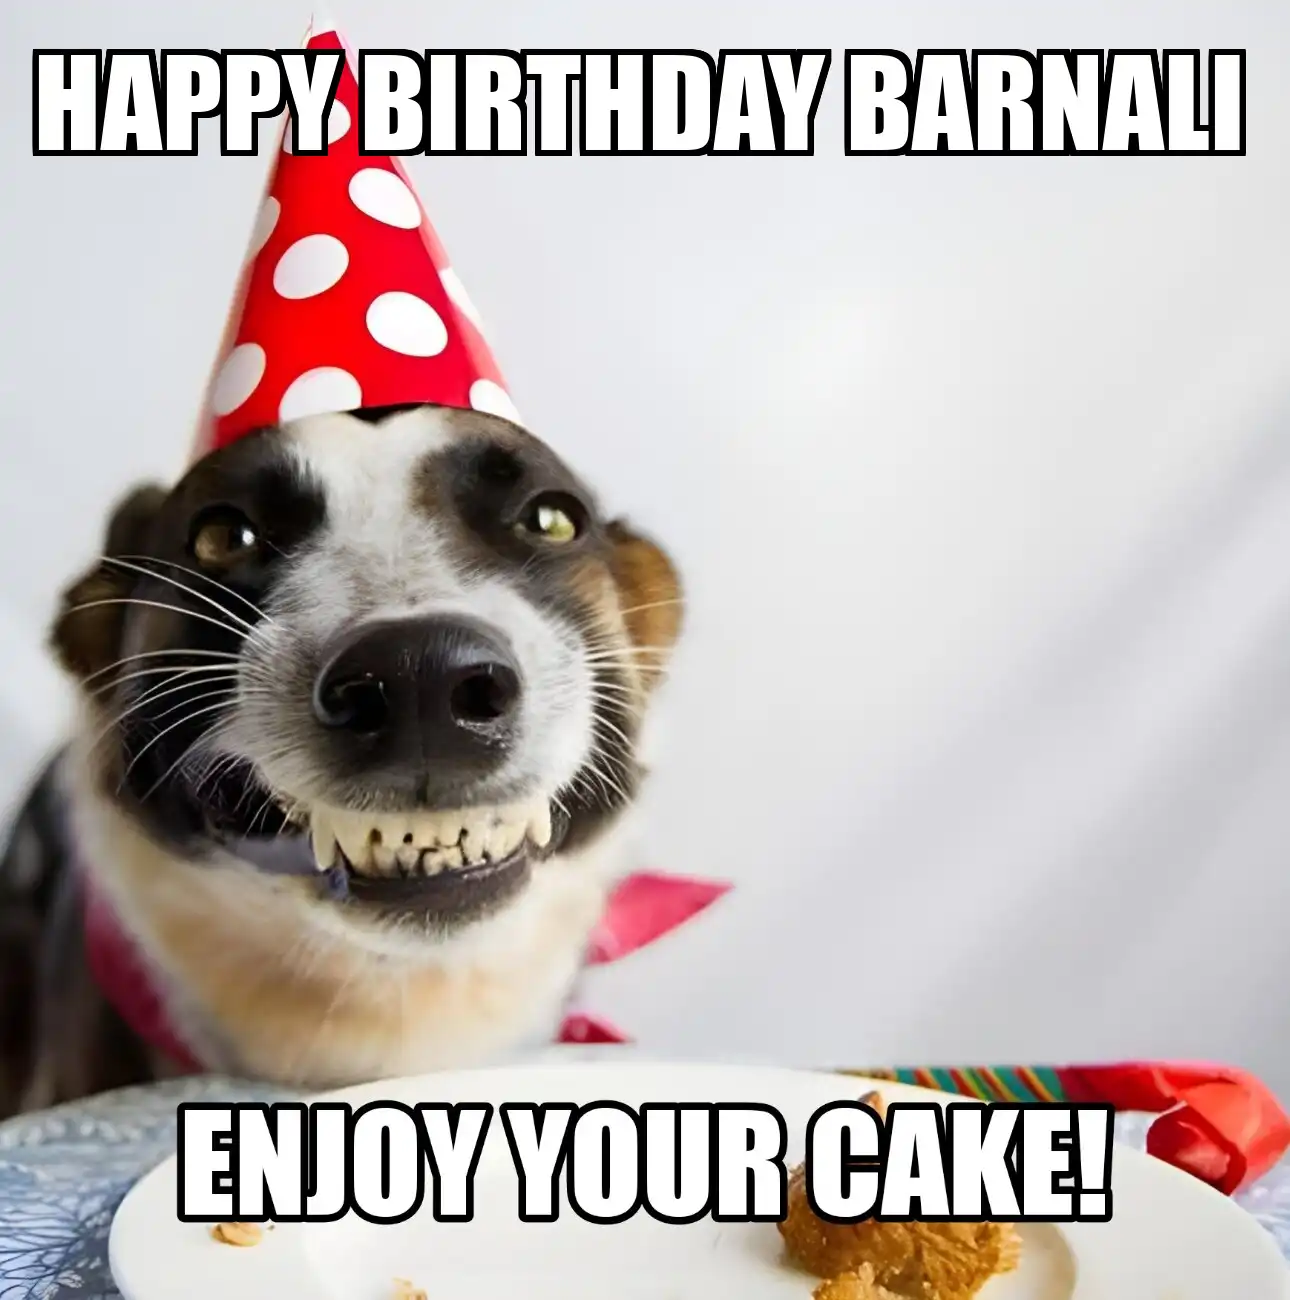 Happy Birthday Barnali Enjoy Your Cake Dog Meme